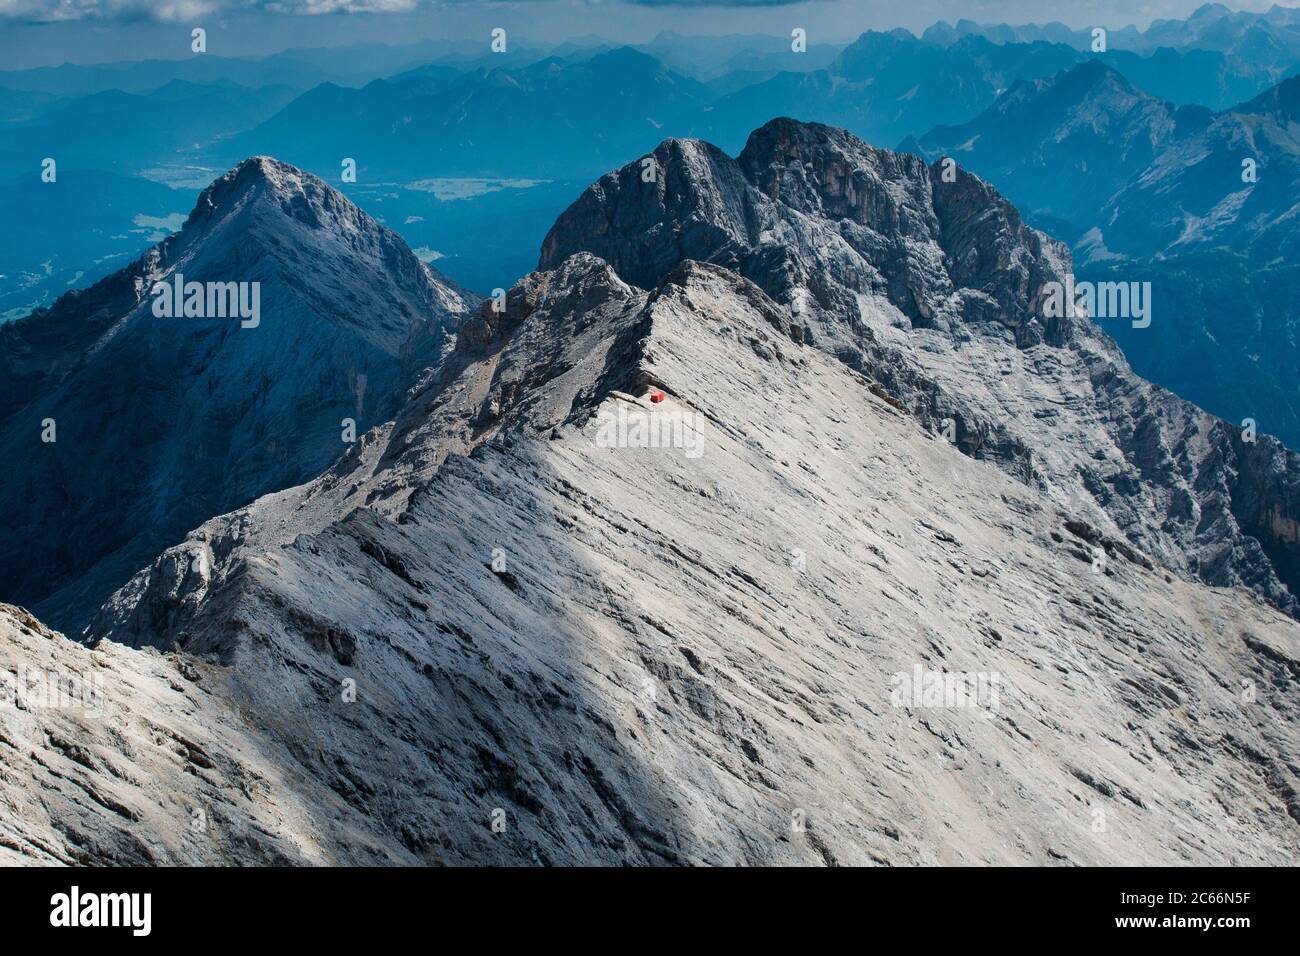 Jubiläumssgrat Araque avec boîte bivouac rouge, Hochblassen Peak, Alpspitze, vue aérienne, Bavière, Allemagne Banque D'Images